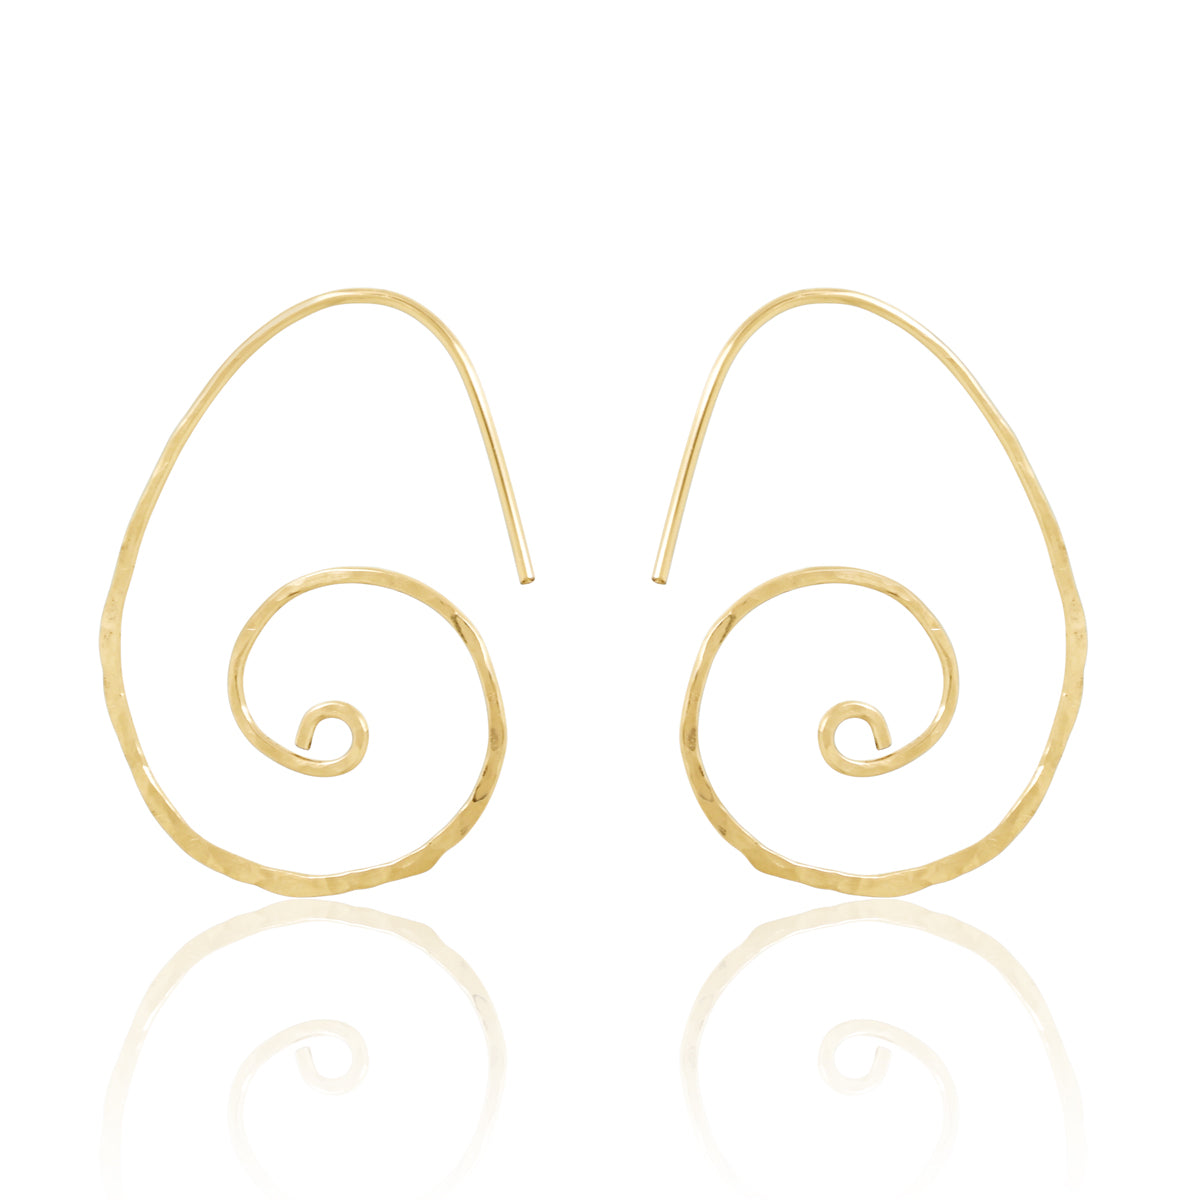 Gold Sacred Spiral Hoops Earrings Shop Dreamers of Dreams